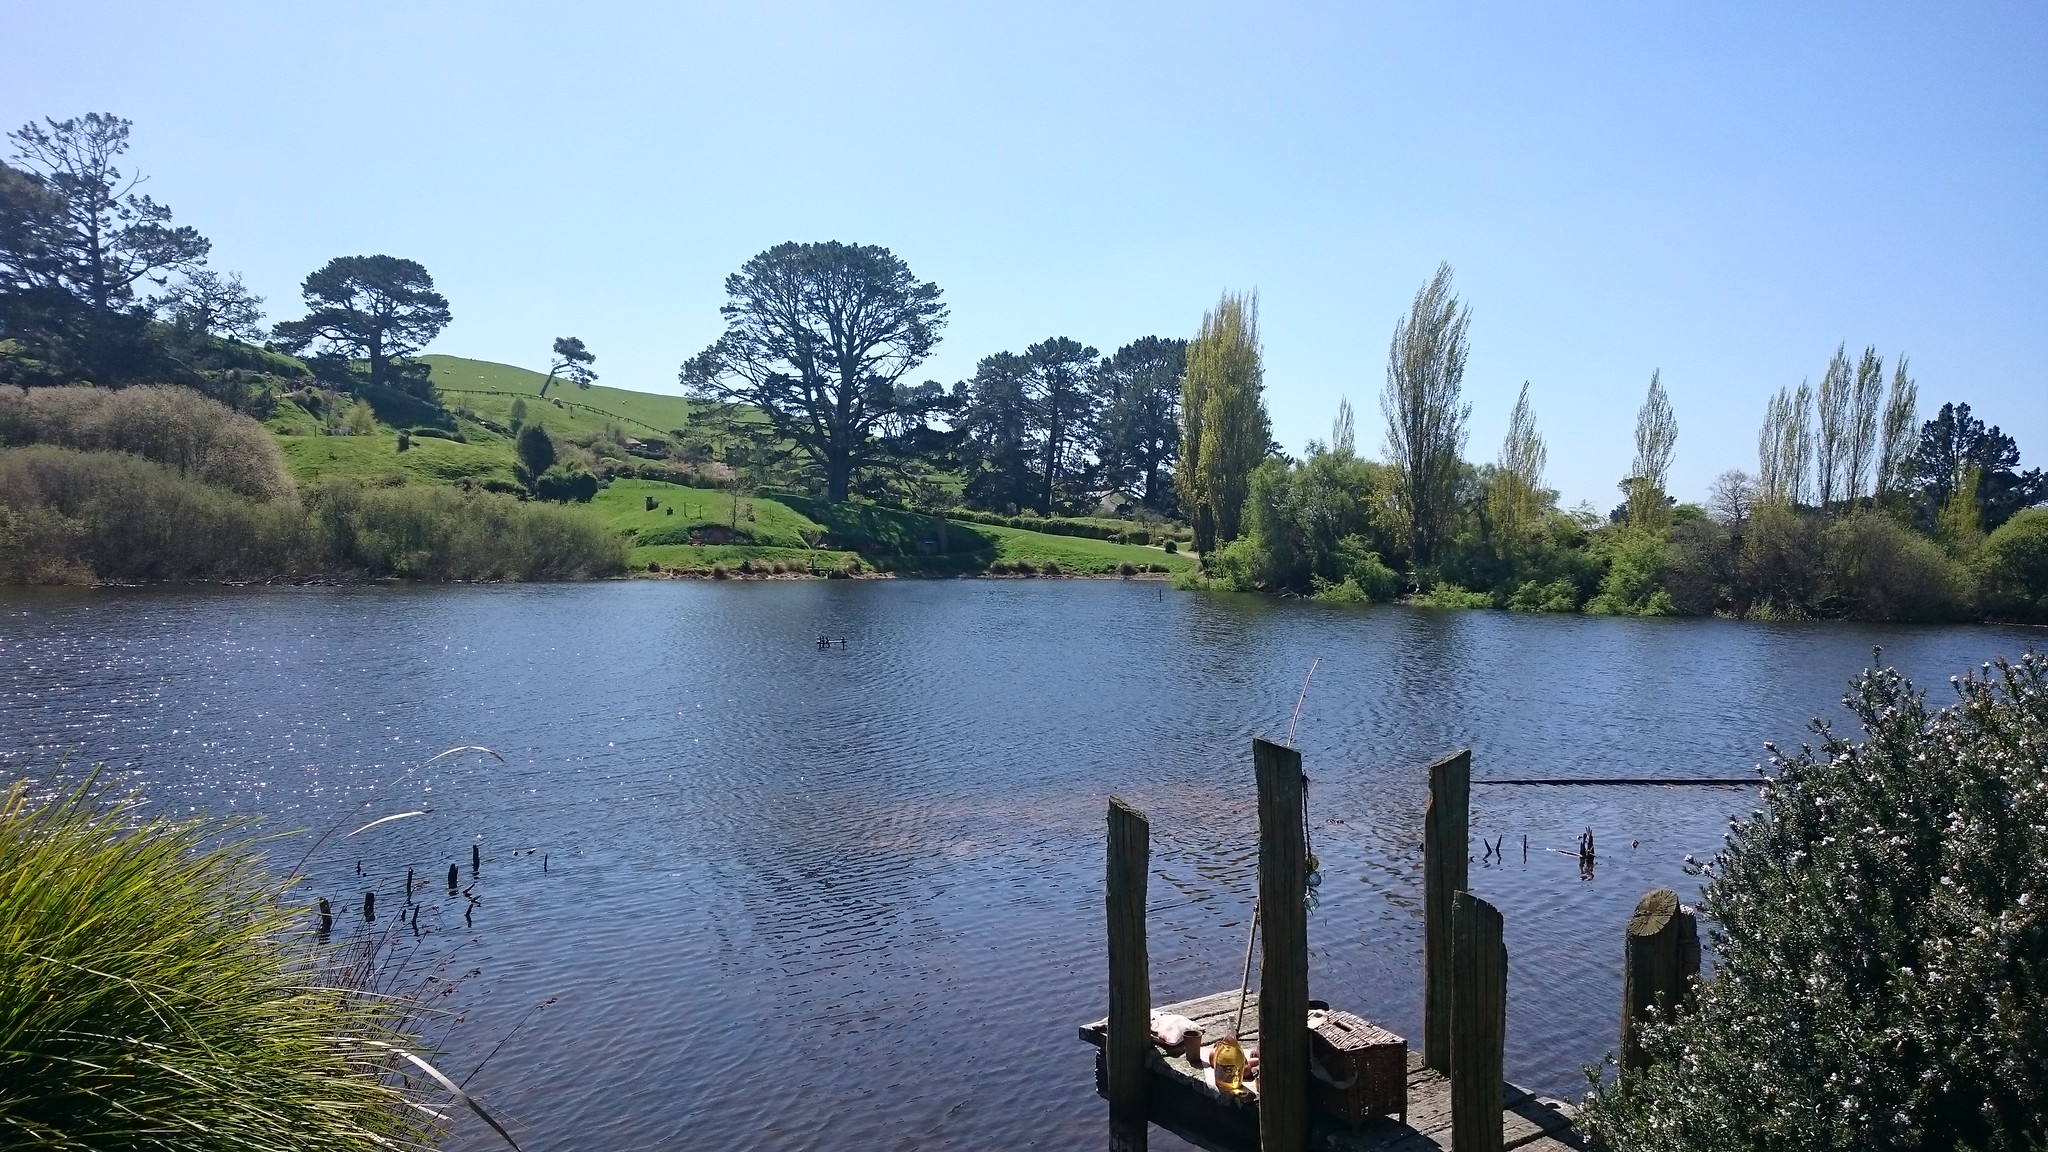 Nueva Zelanda, Aotearoa: El viaje de mi vida por la Tierra Media - Blogs de Nueva Zelanda - Día 7 - 6/10/15 - Hobbiton, Rotorua, Mitai Maori Village y Rainbow Springs (43)